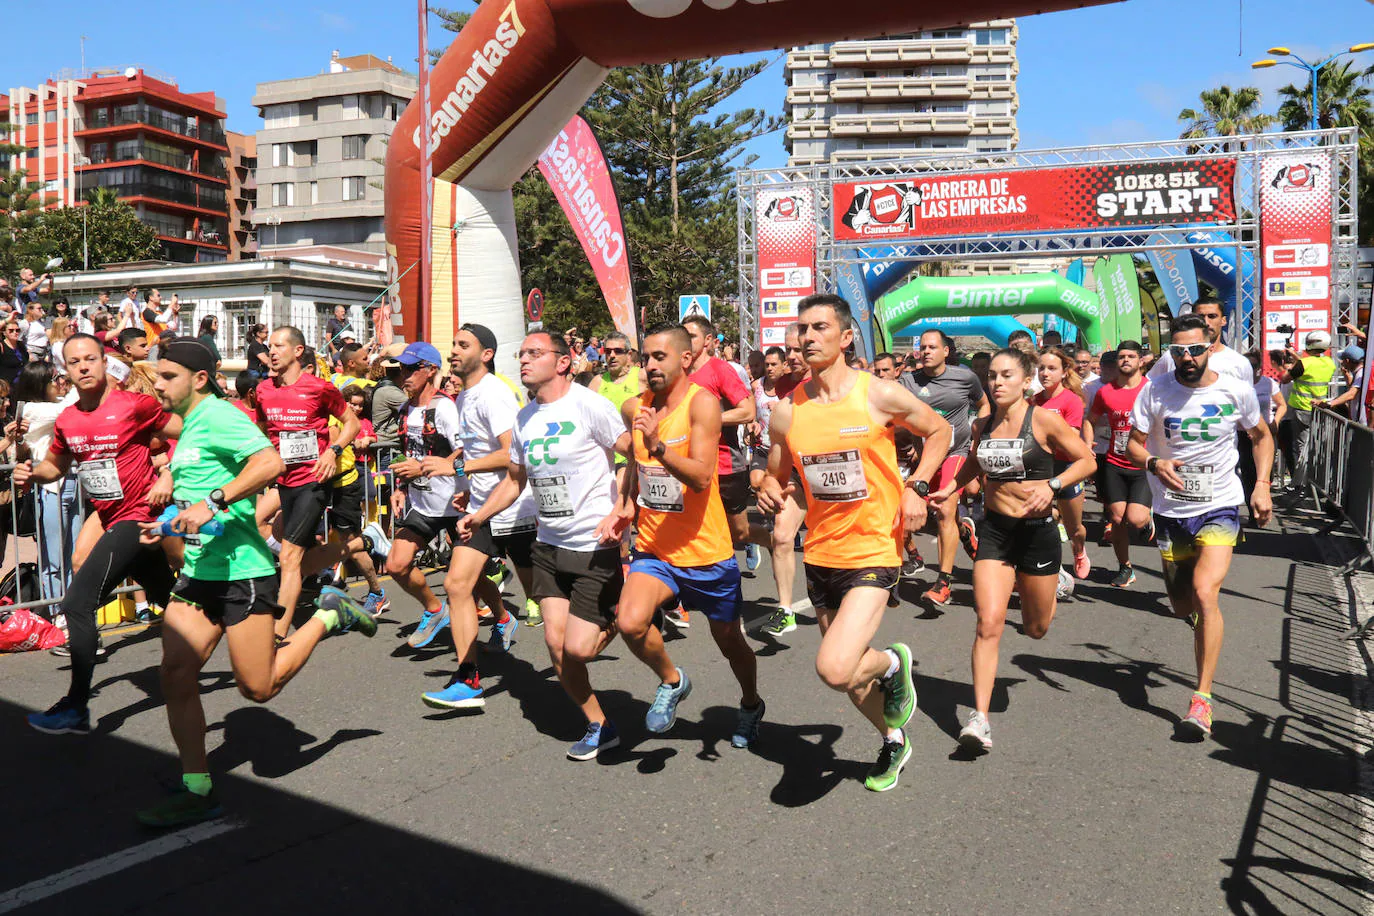 El 2 de octubre regresa CANARIAS7 Carrera de las Empresas a Las Palmas de Gran Canaria. 